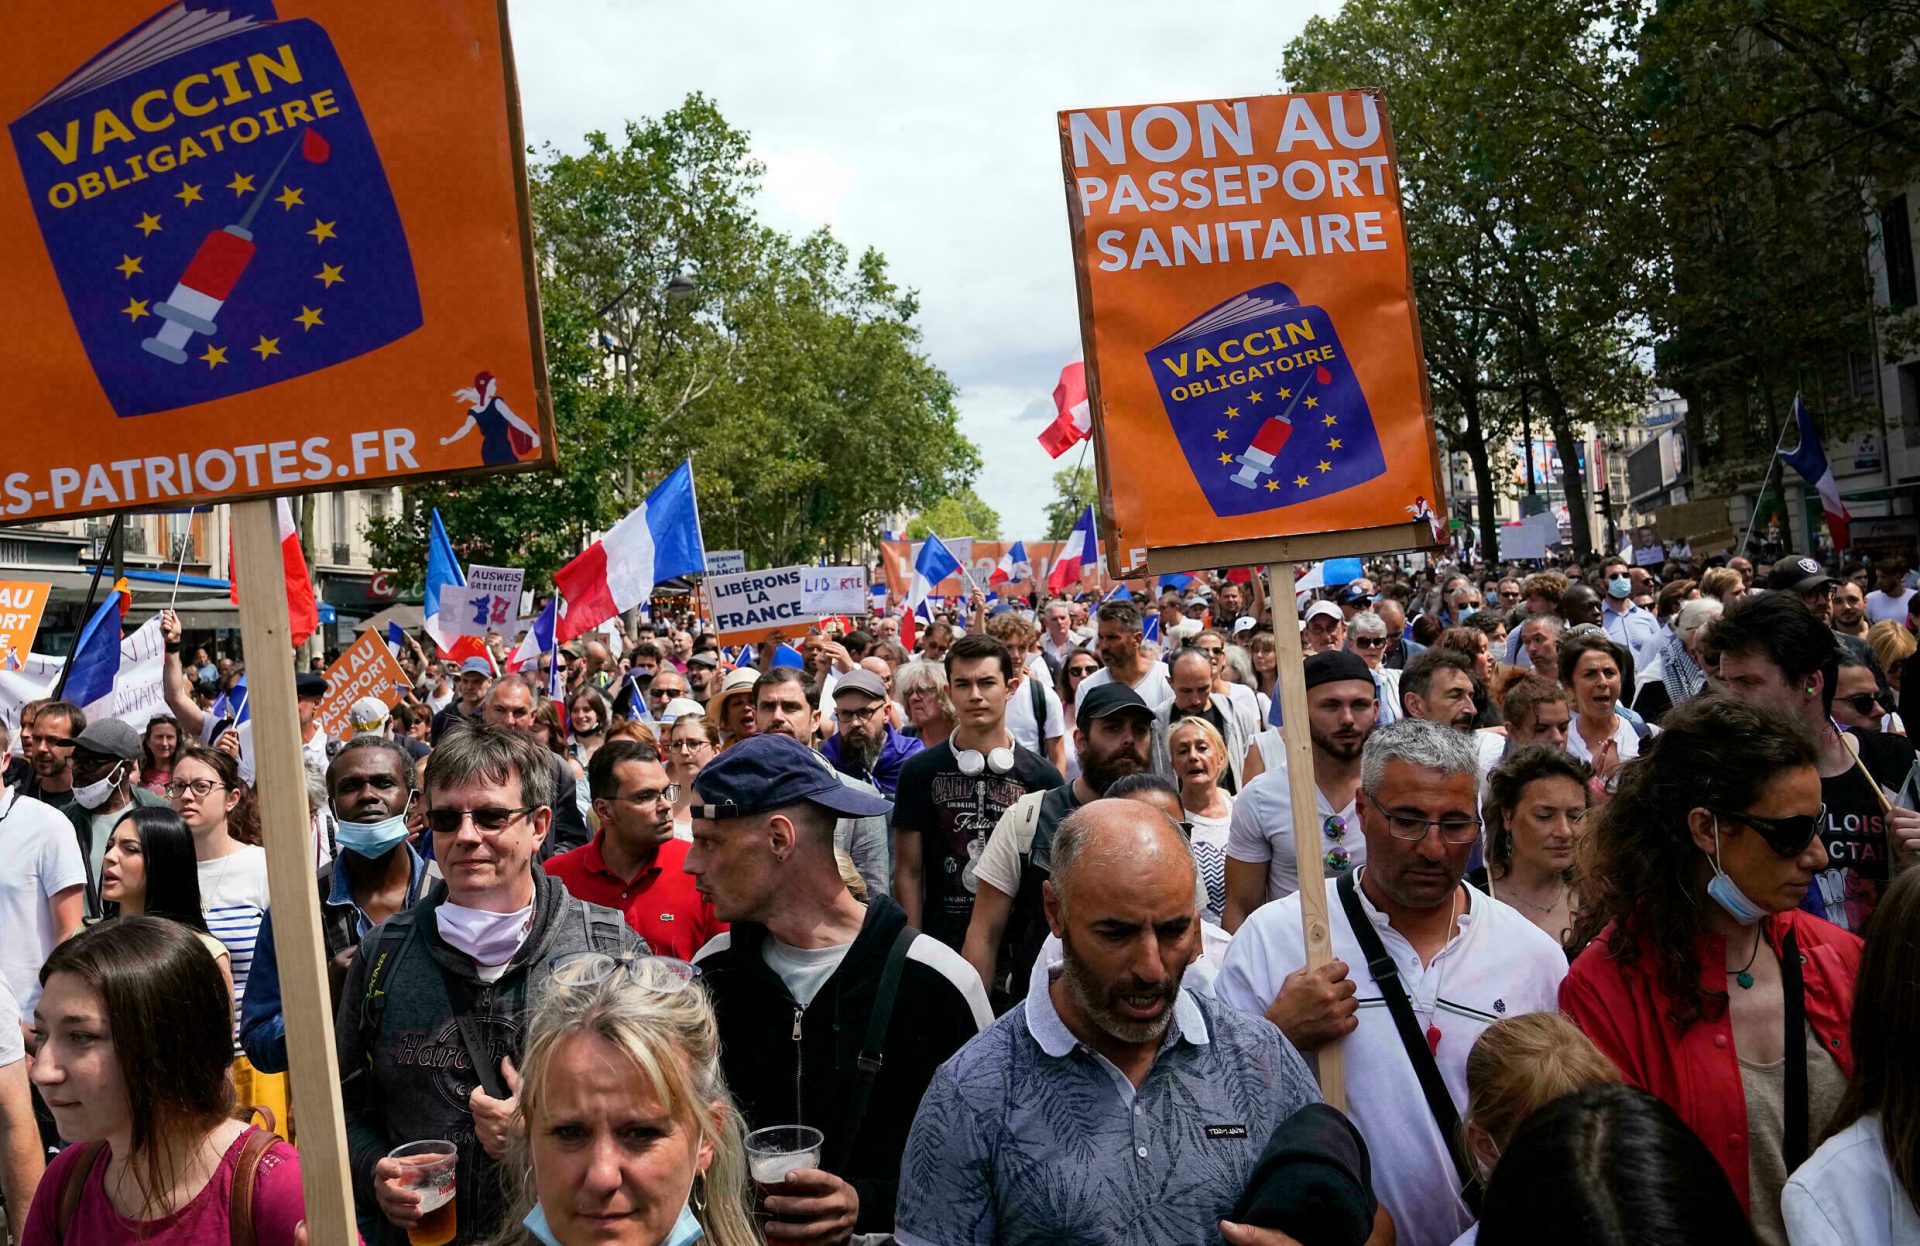 Jurnaliștii francezi, ținta manifestanților anti-pașaport sanitar. Doi fotoreporteri, insultaţi şi scuipaţi de protestatari